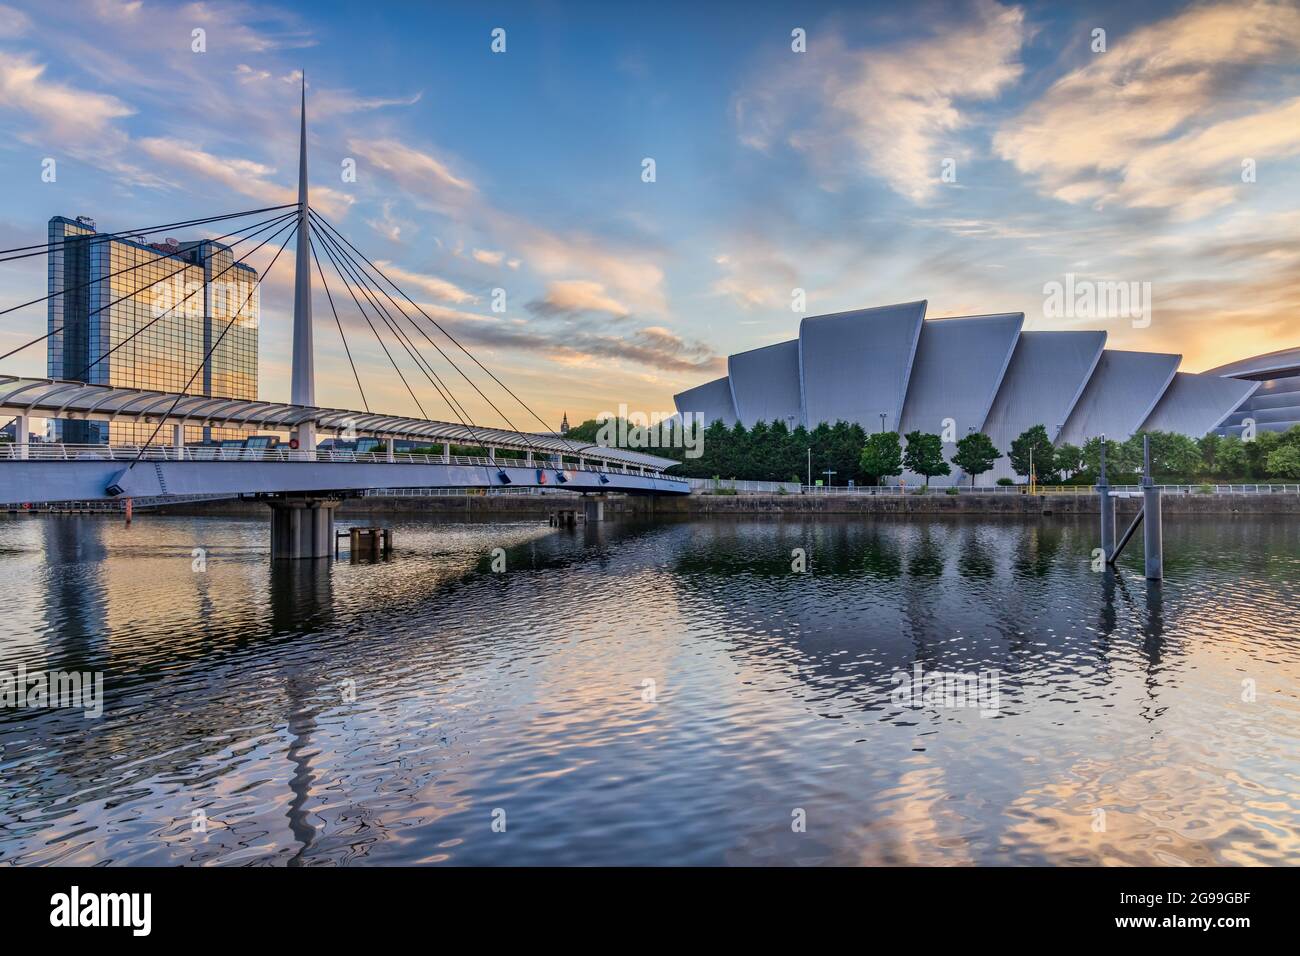 Bell's Bridge e il SEC Armadillo sul fiume Clyde a Glasgow, preso all'alba. Foto Stock